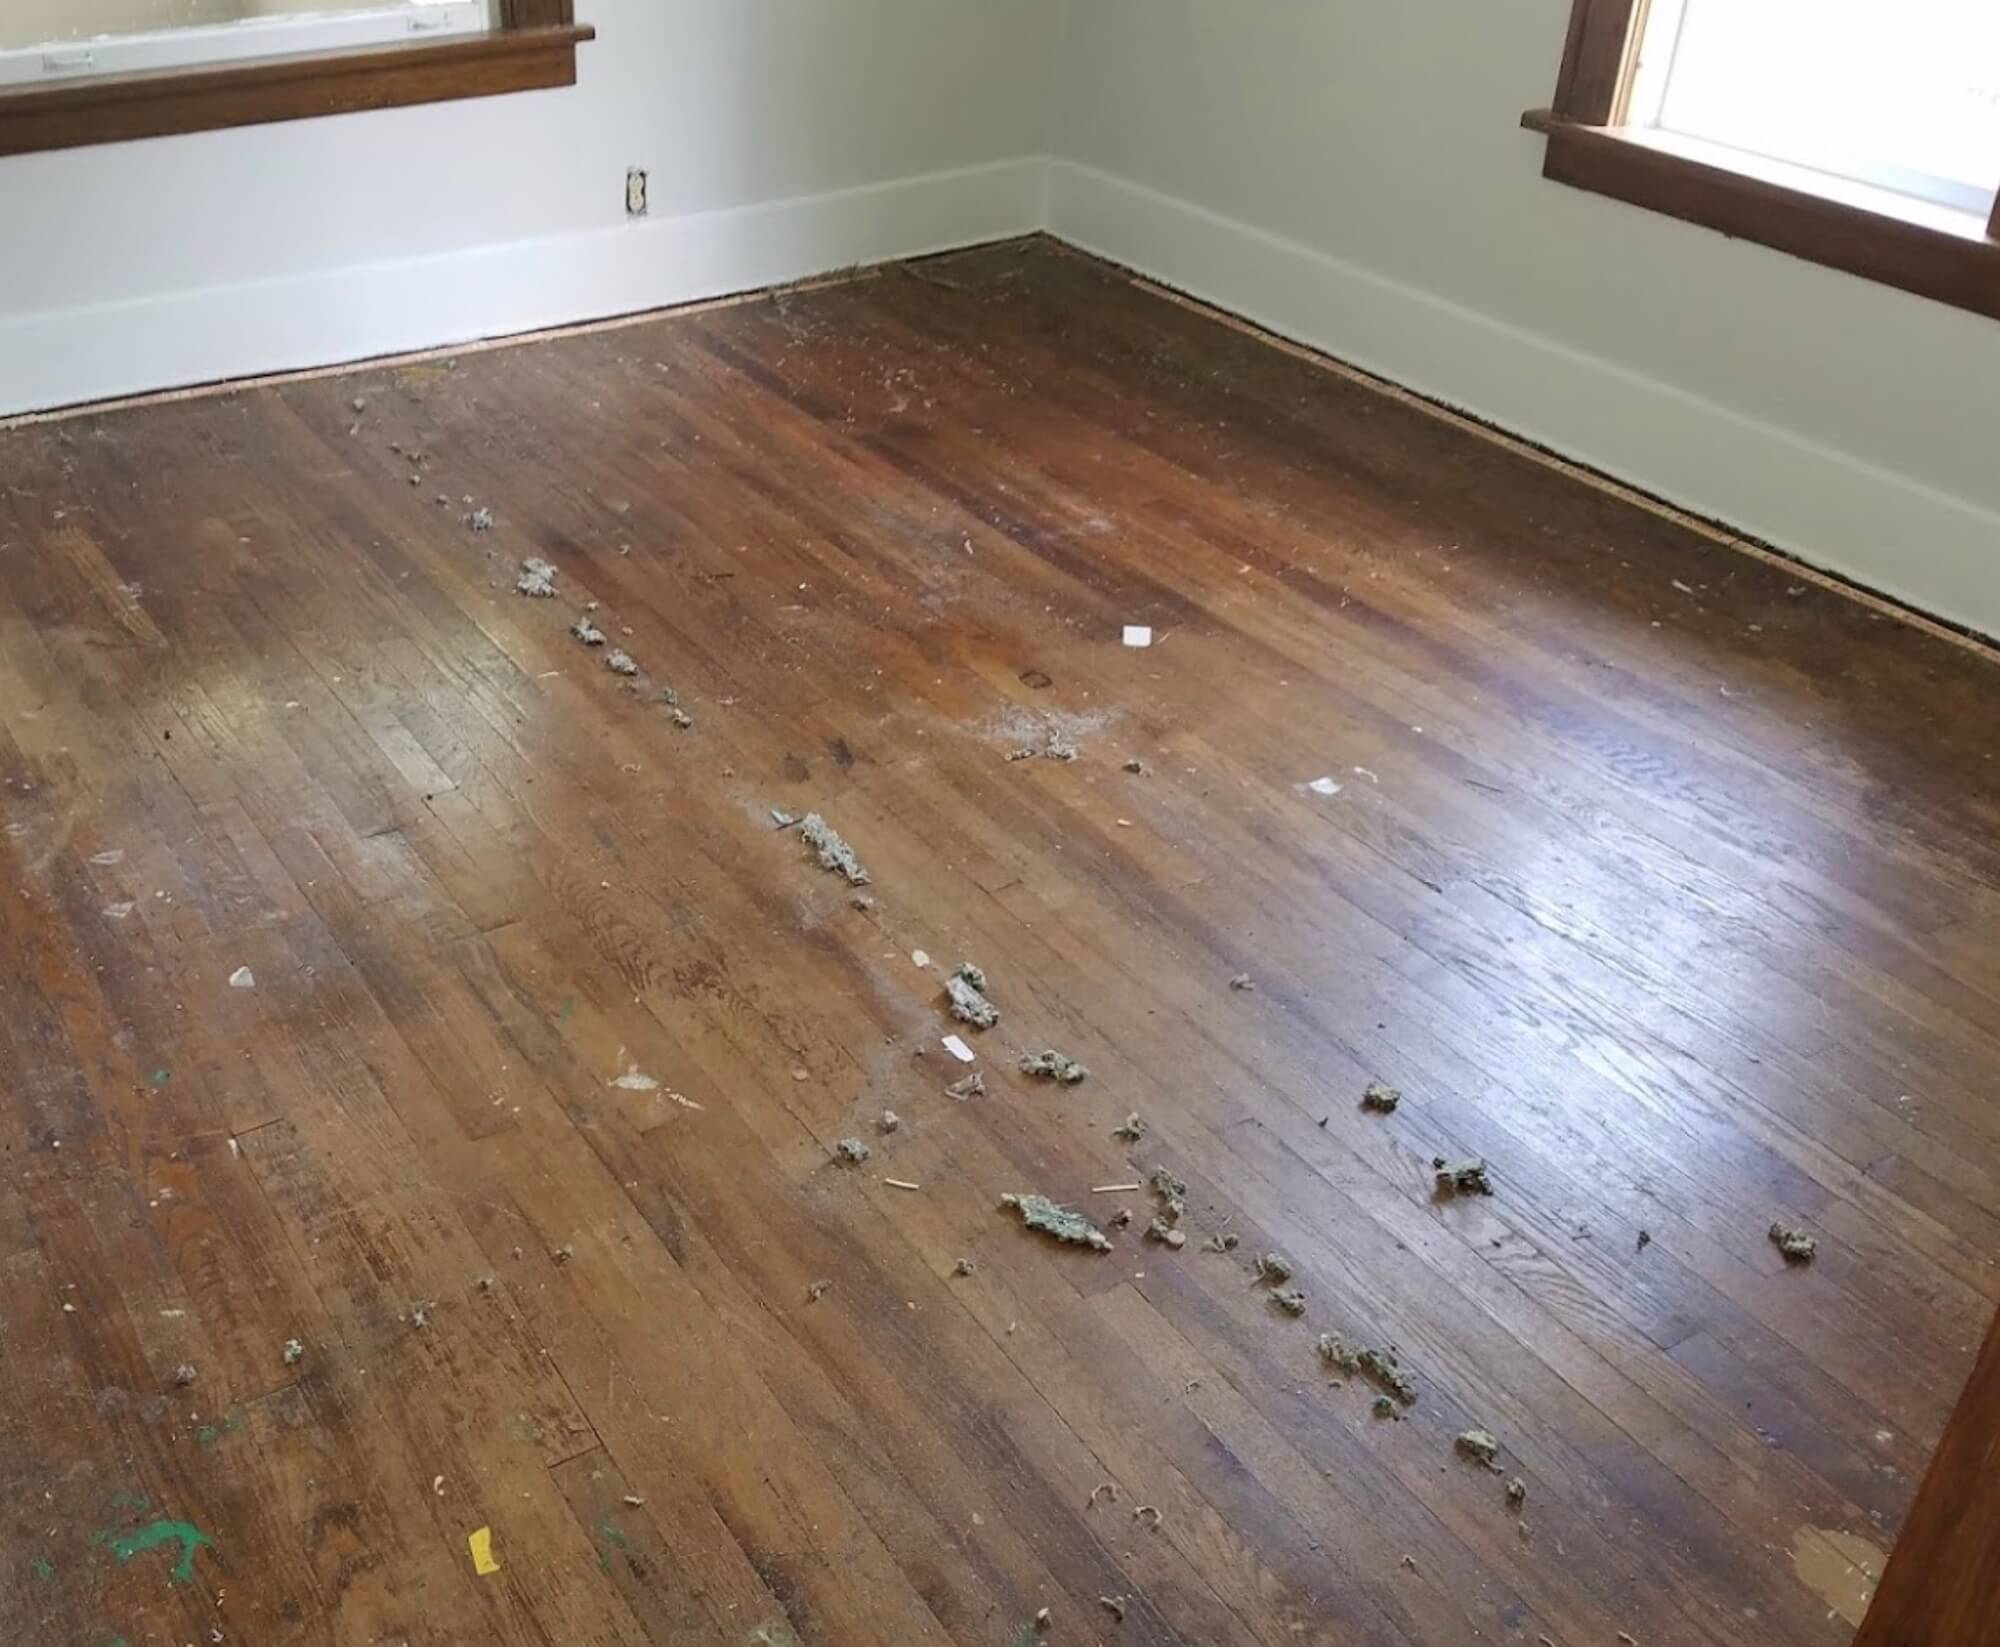 a dusty hardwood floor surface